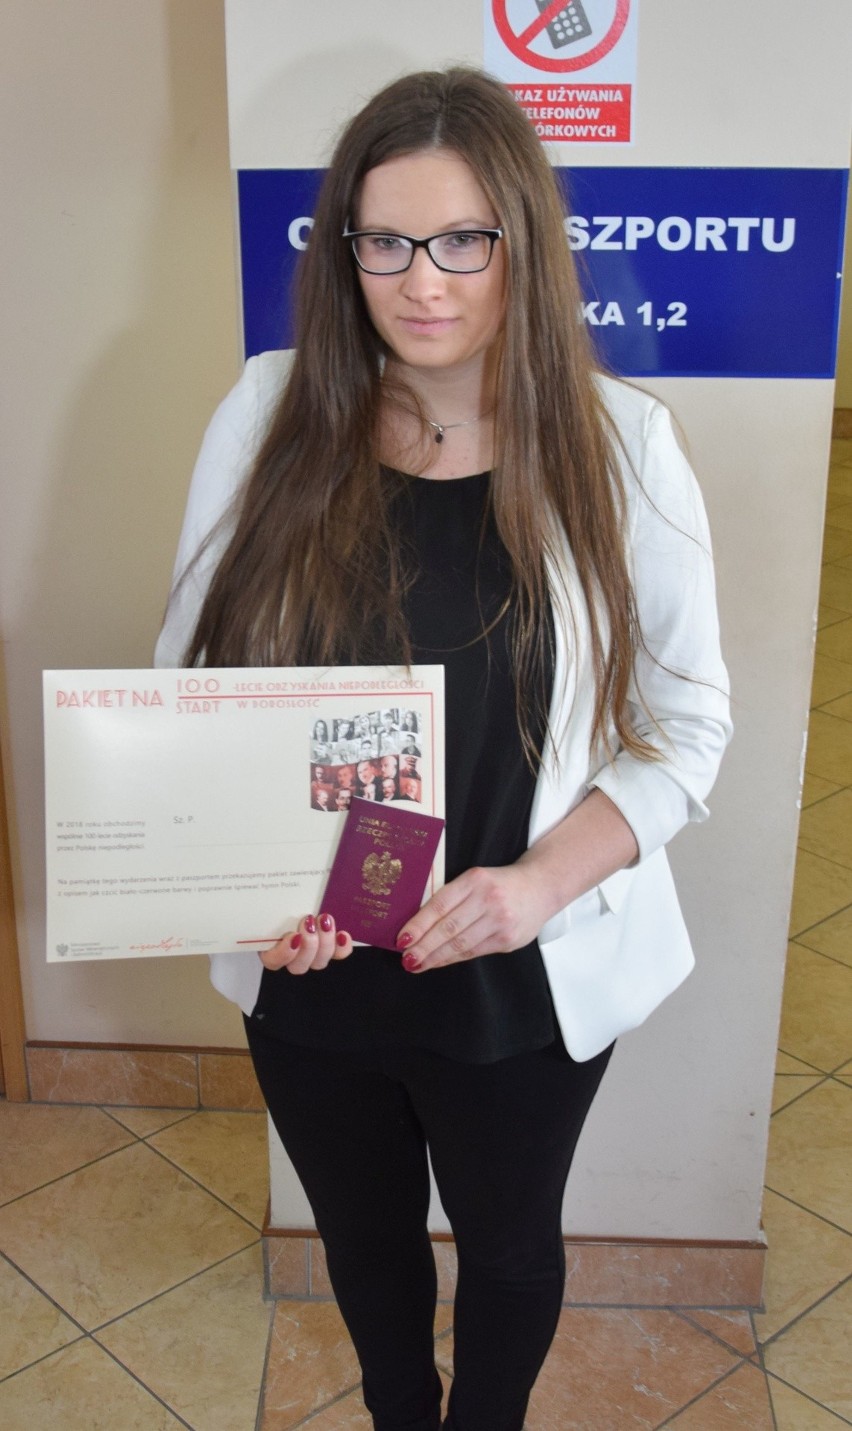 Pierwszy paszport niepodległościowy wydany. Trafił do mieszkanki gminy Chęciny